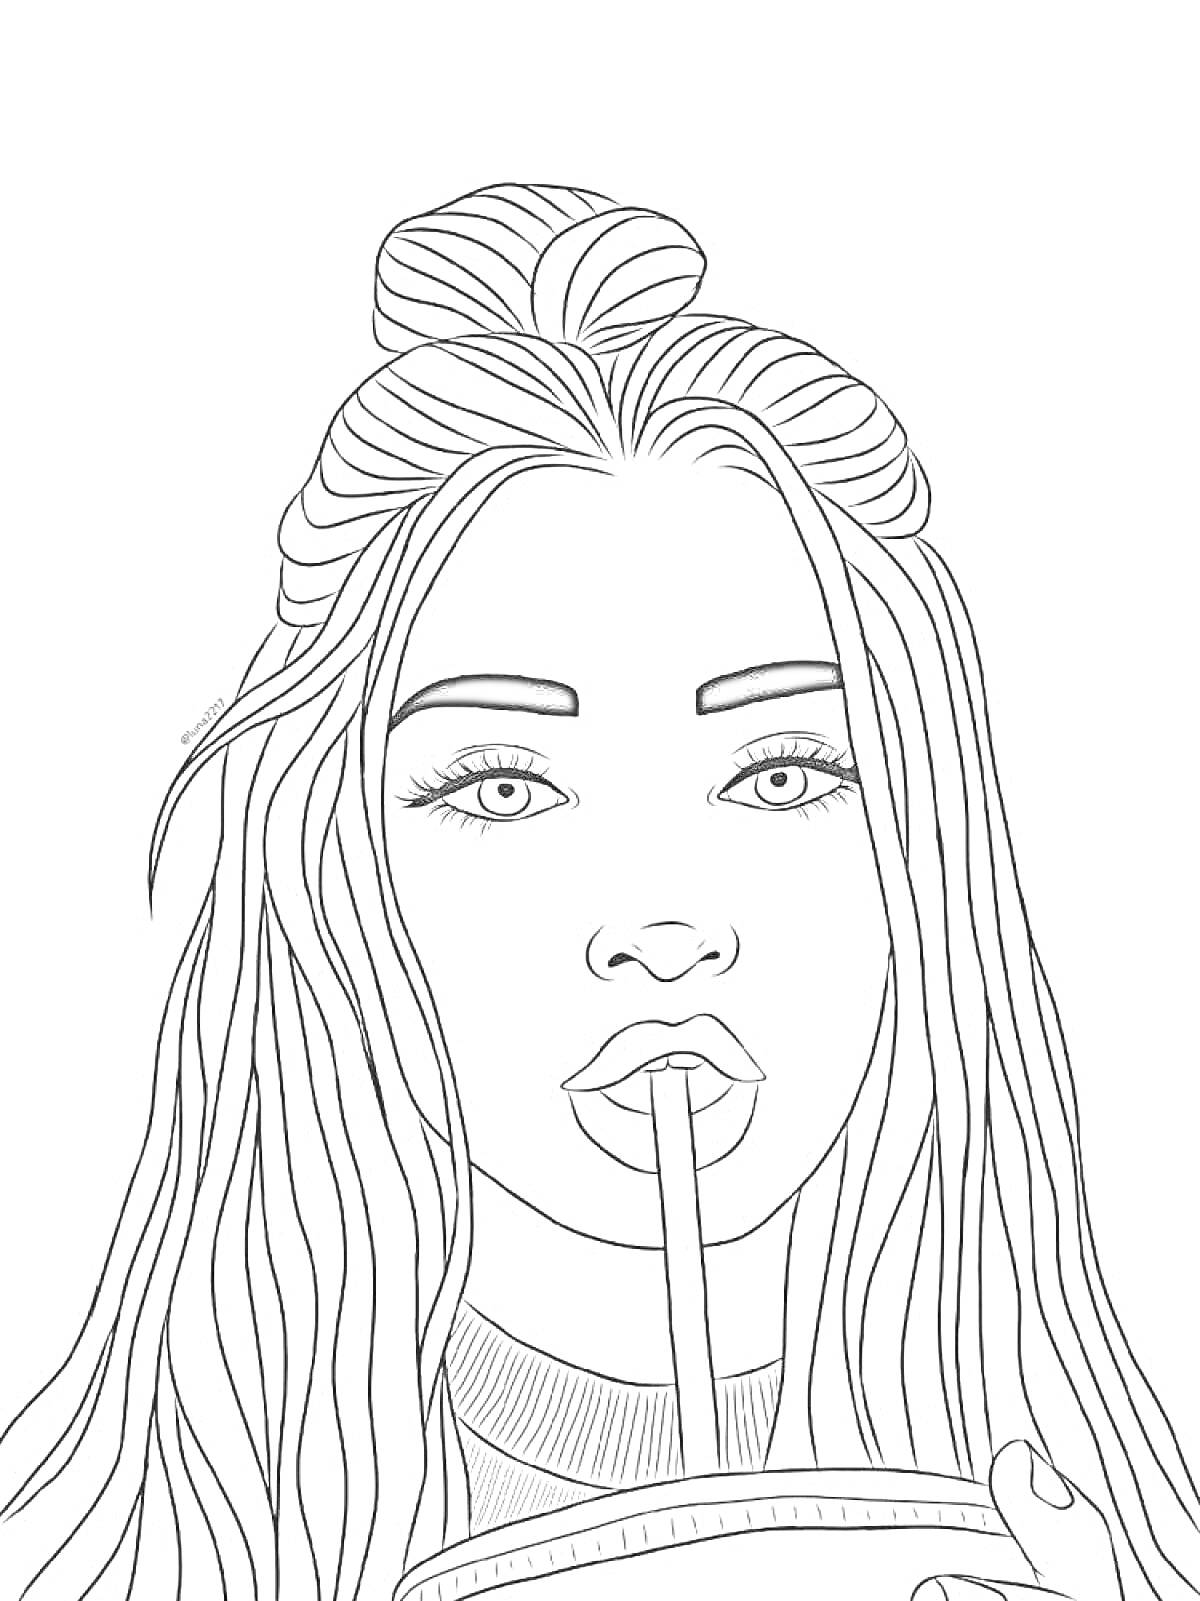  Девушка с длинными волосами, пьющая напиток из стаканчика с соломинкой